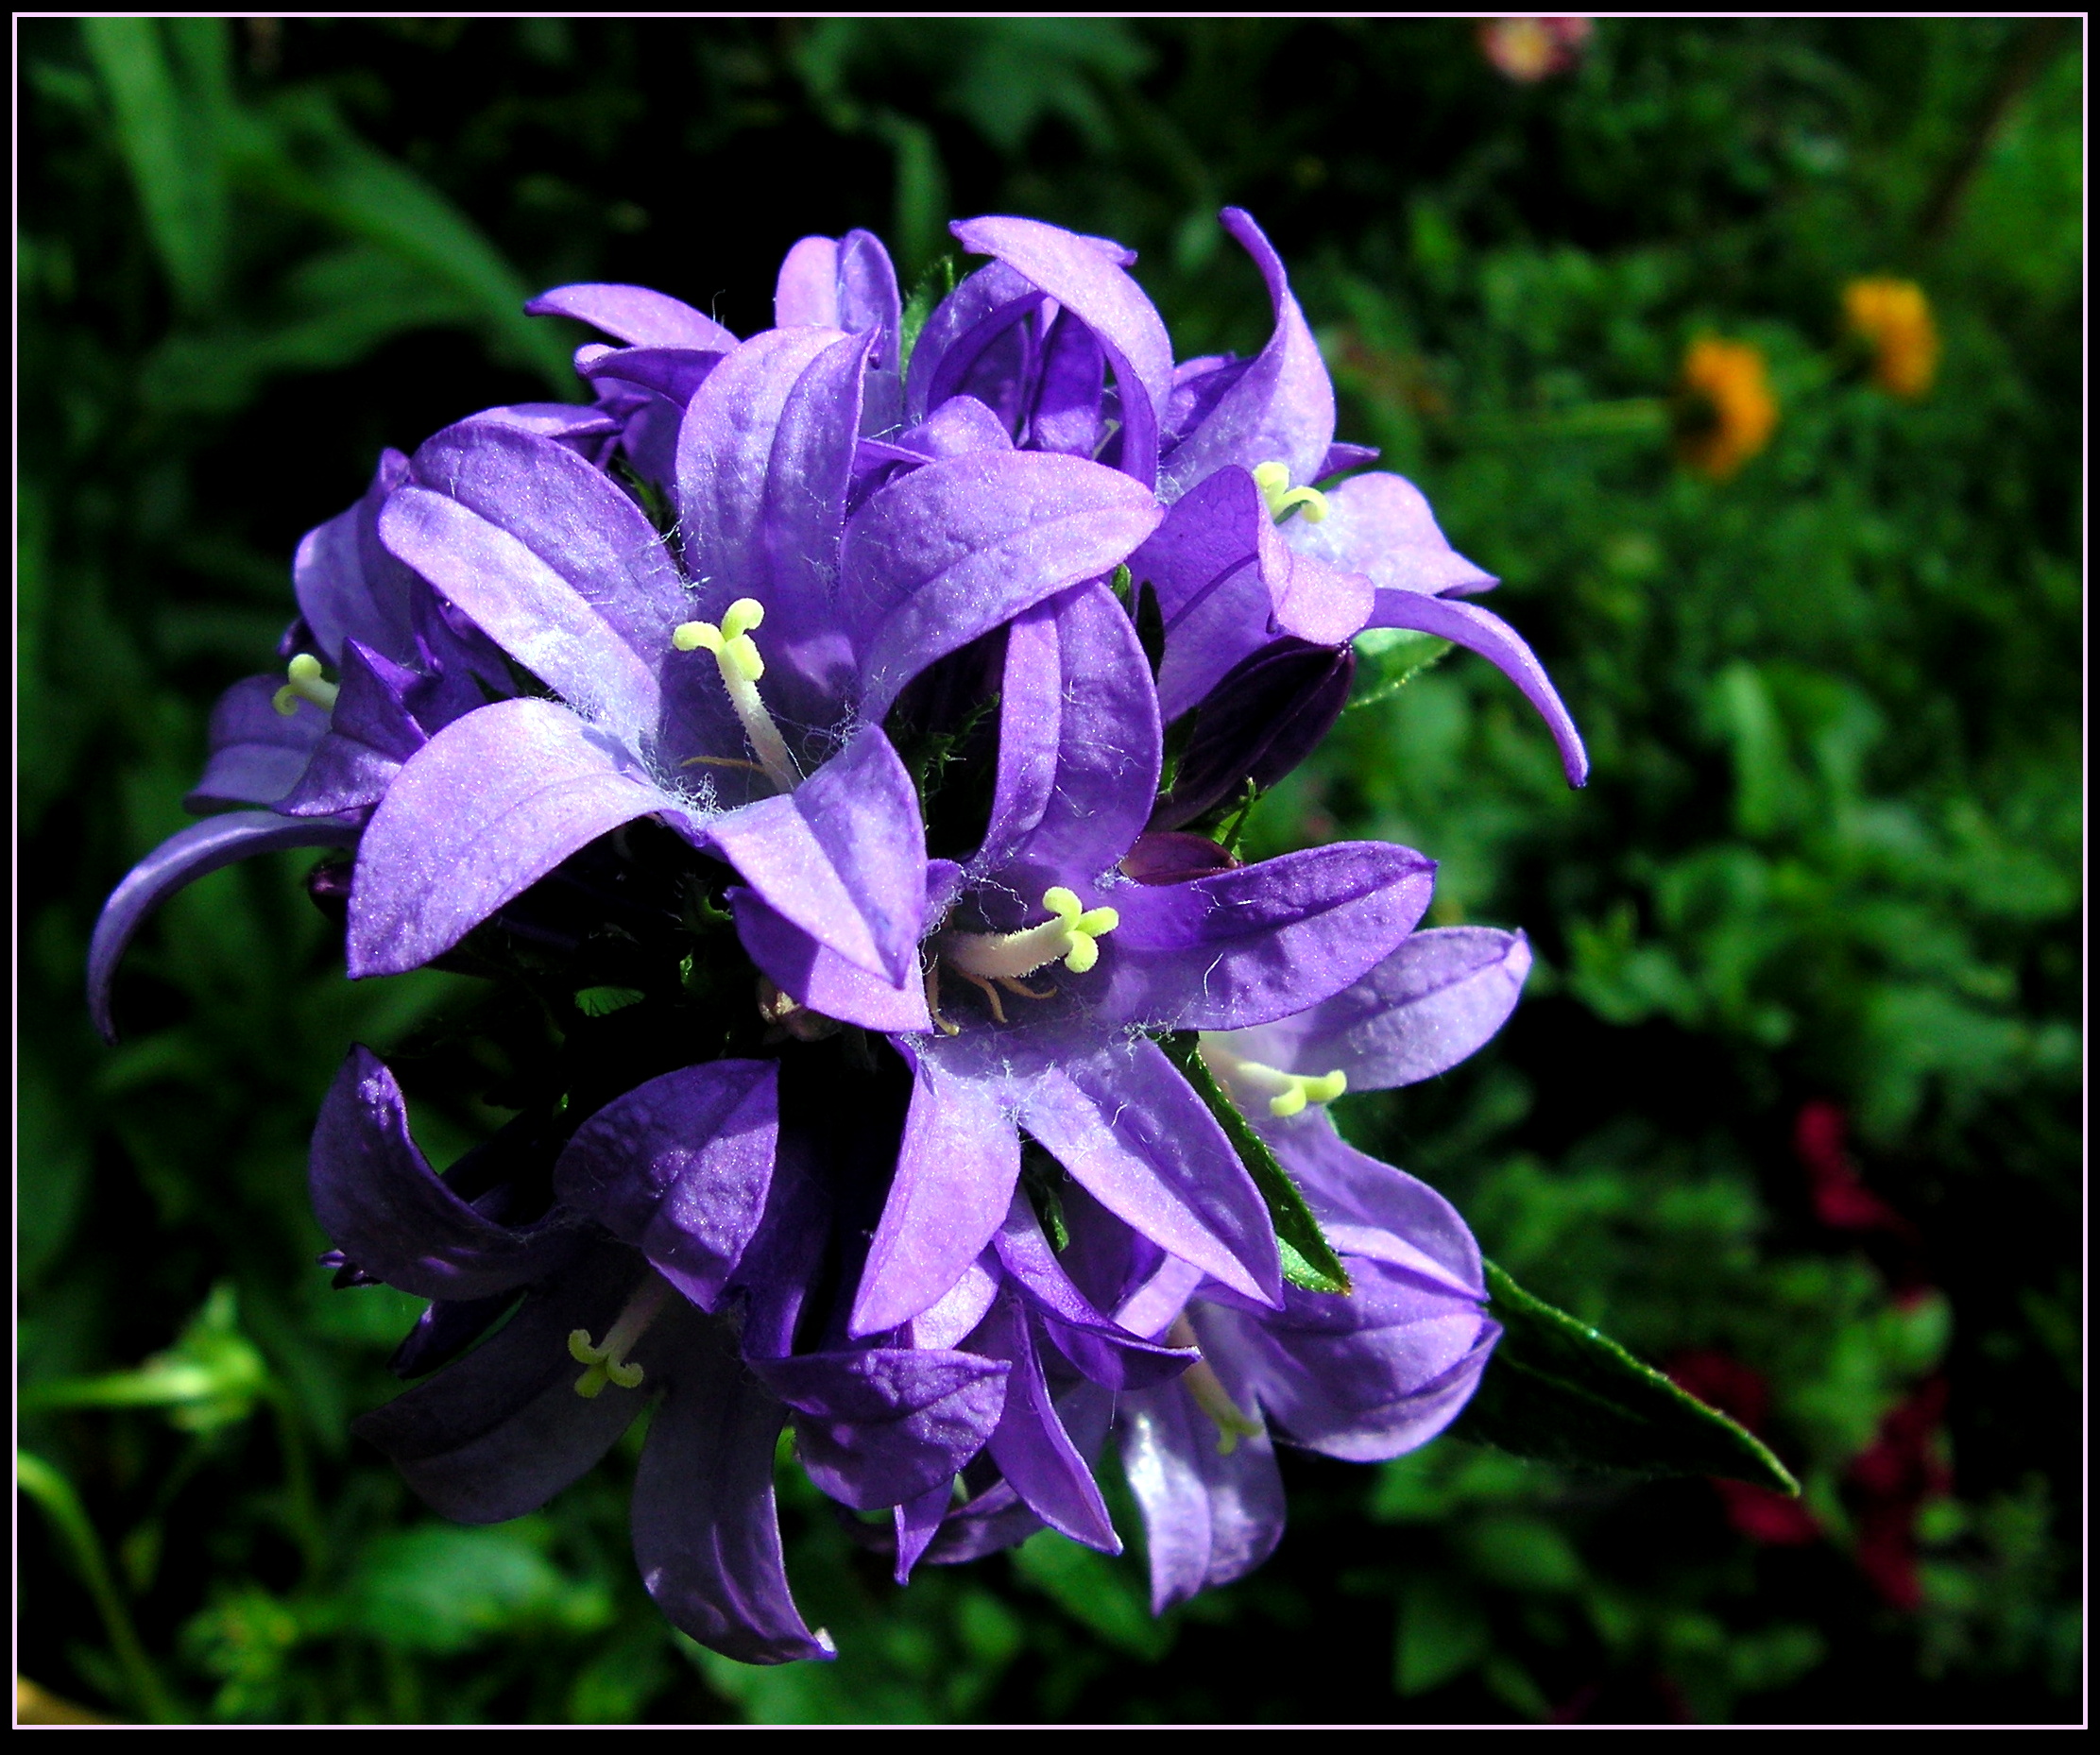 Violet Flowers by JocelyneR on DeviantArt